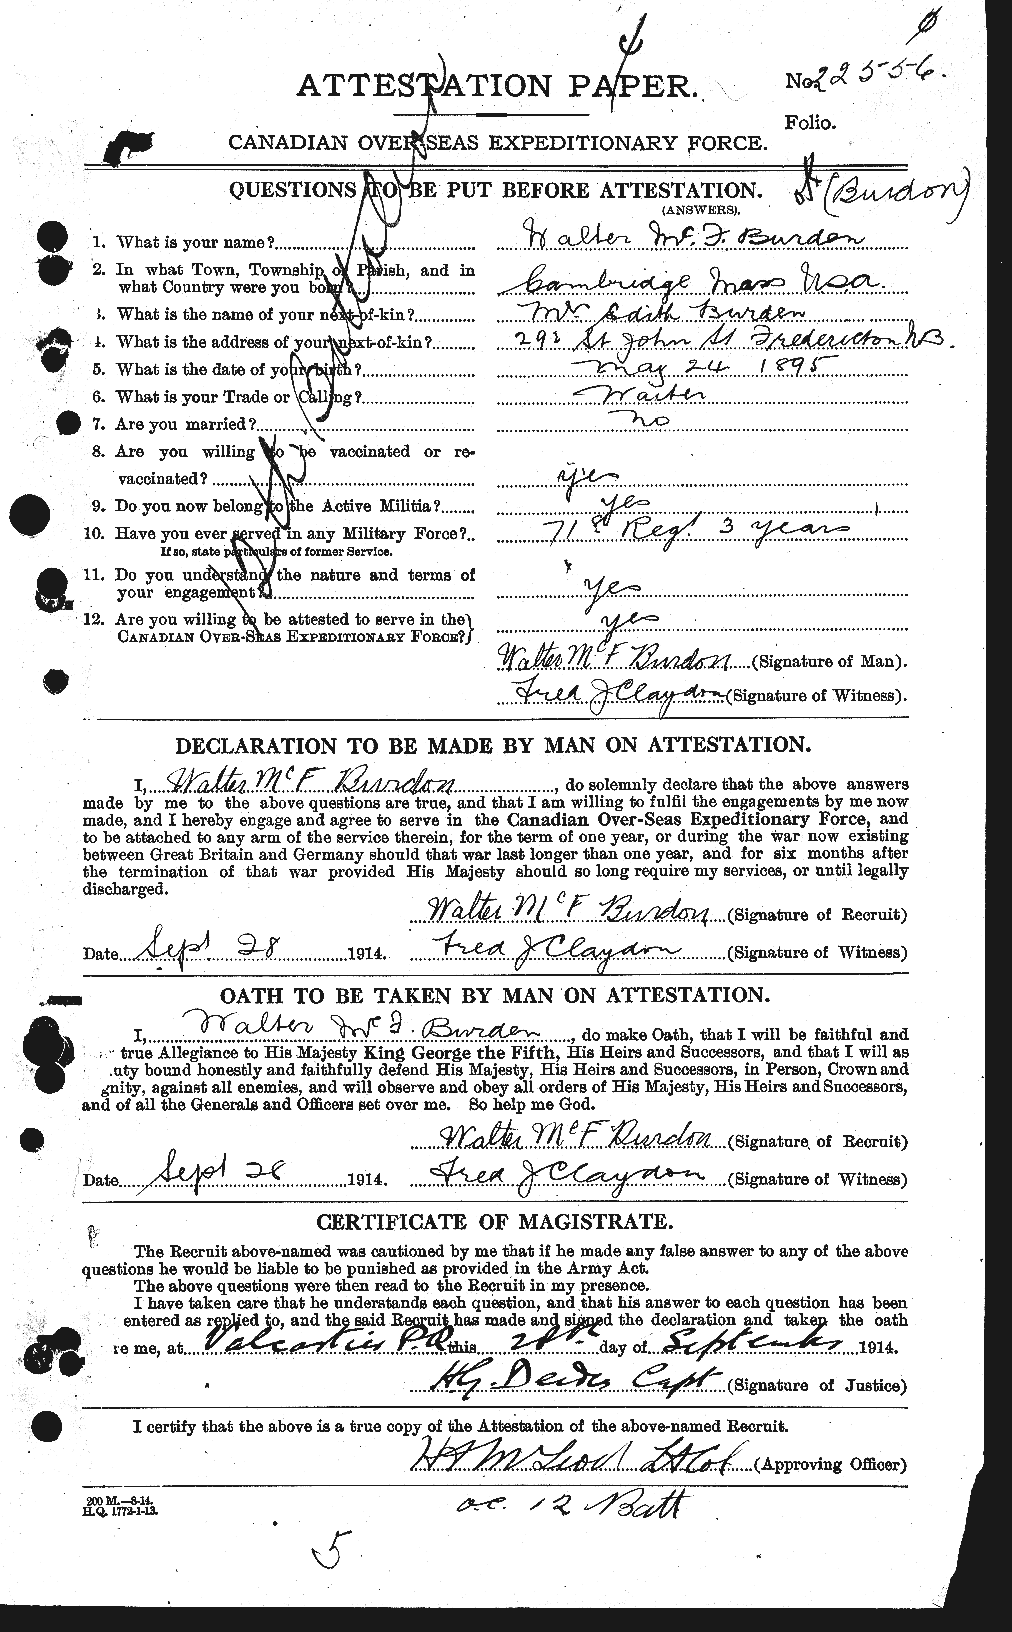 Dossiers du Personnel de la Première Guerre mondiale - CEC 273358a